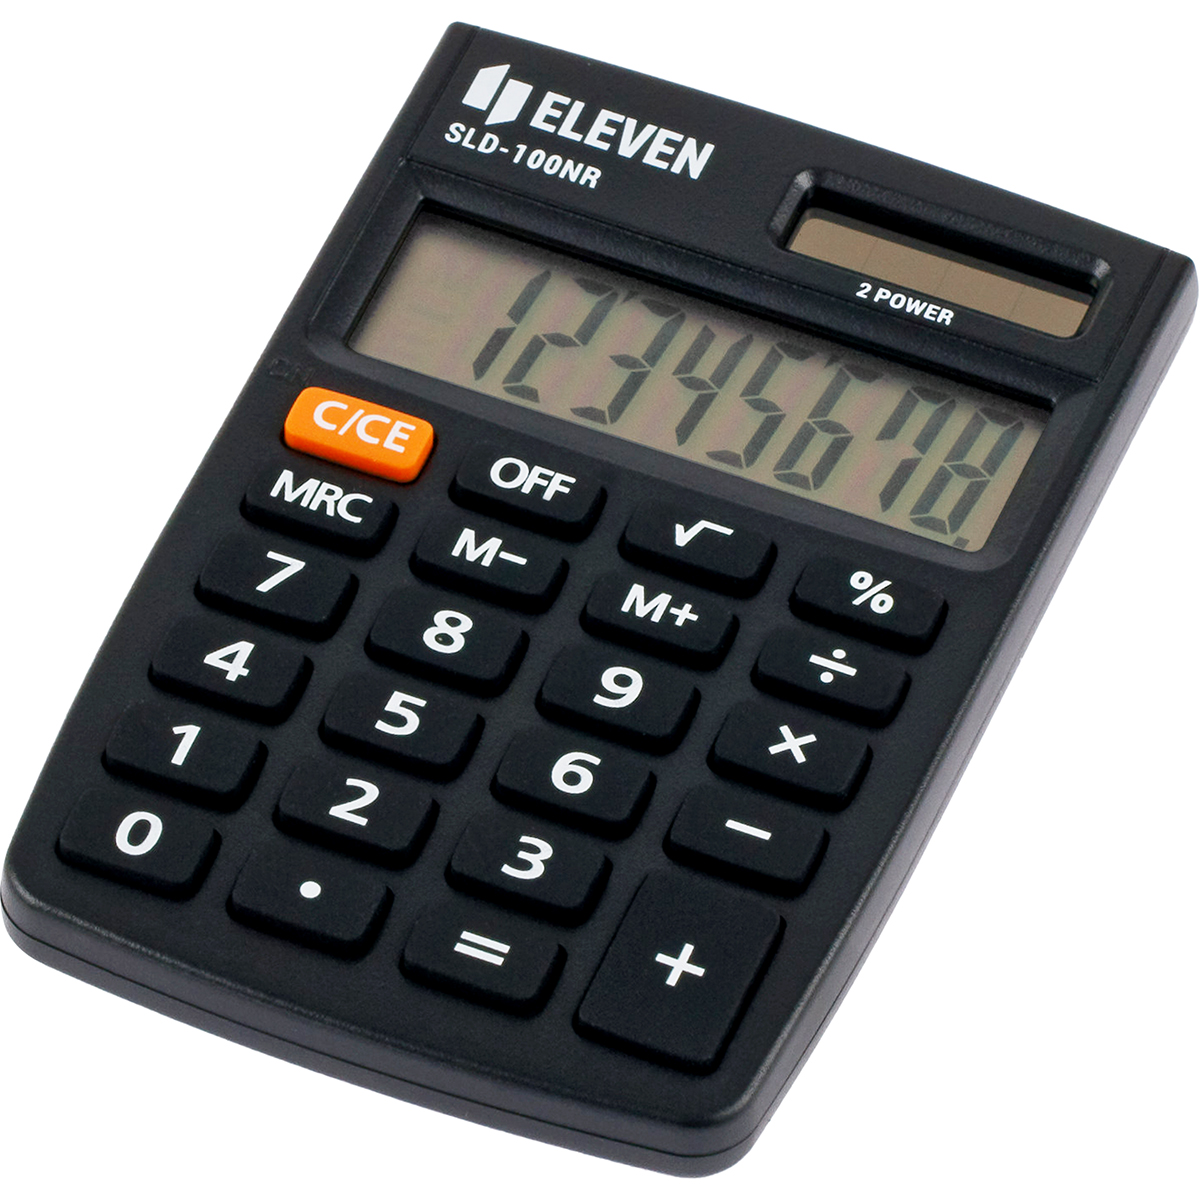 Калькулятор карманный Eleven SLD-100NR, 8 разрядов, двойное питание, 58*88*10мм